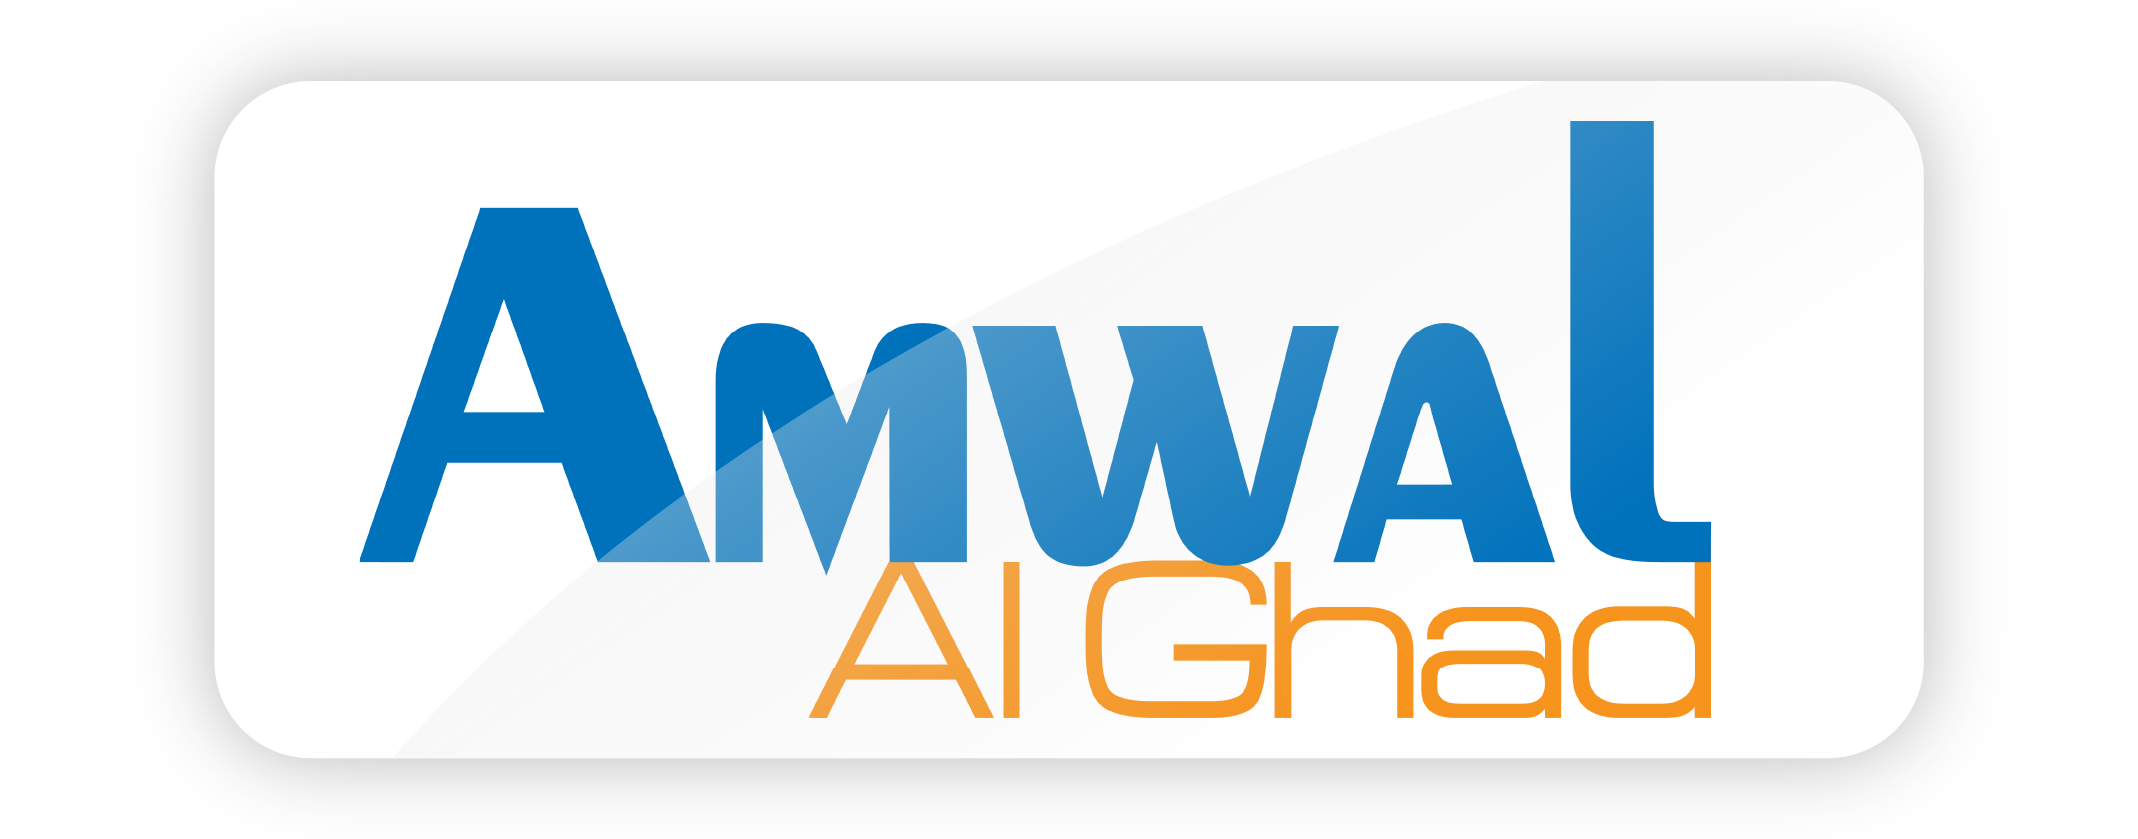 Amwal al ghad logo